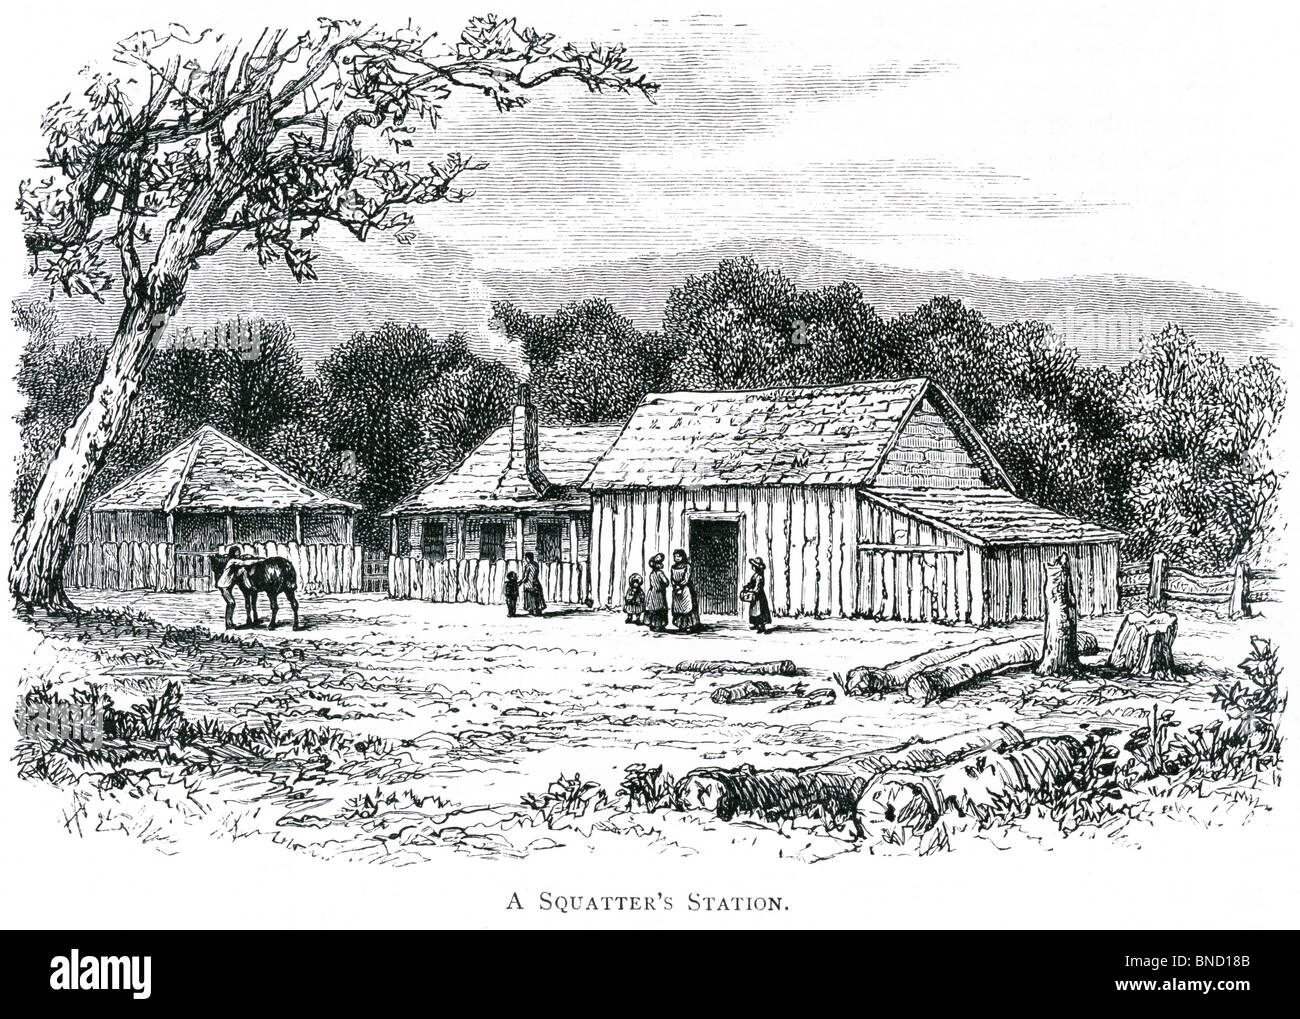 Une gravure d'une station de squatteurs - publié dans un livre sur l'Australie imprimé en 1886. Banque D'Images